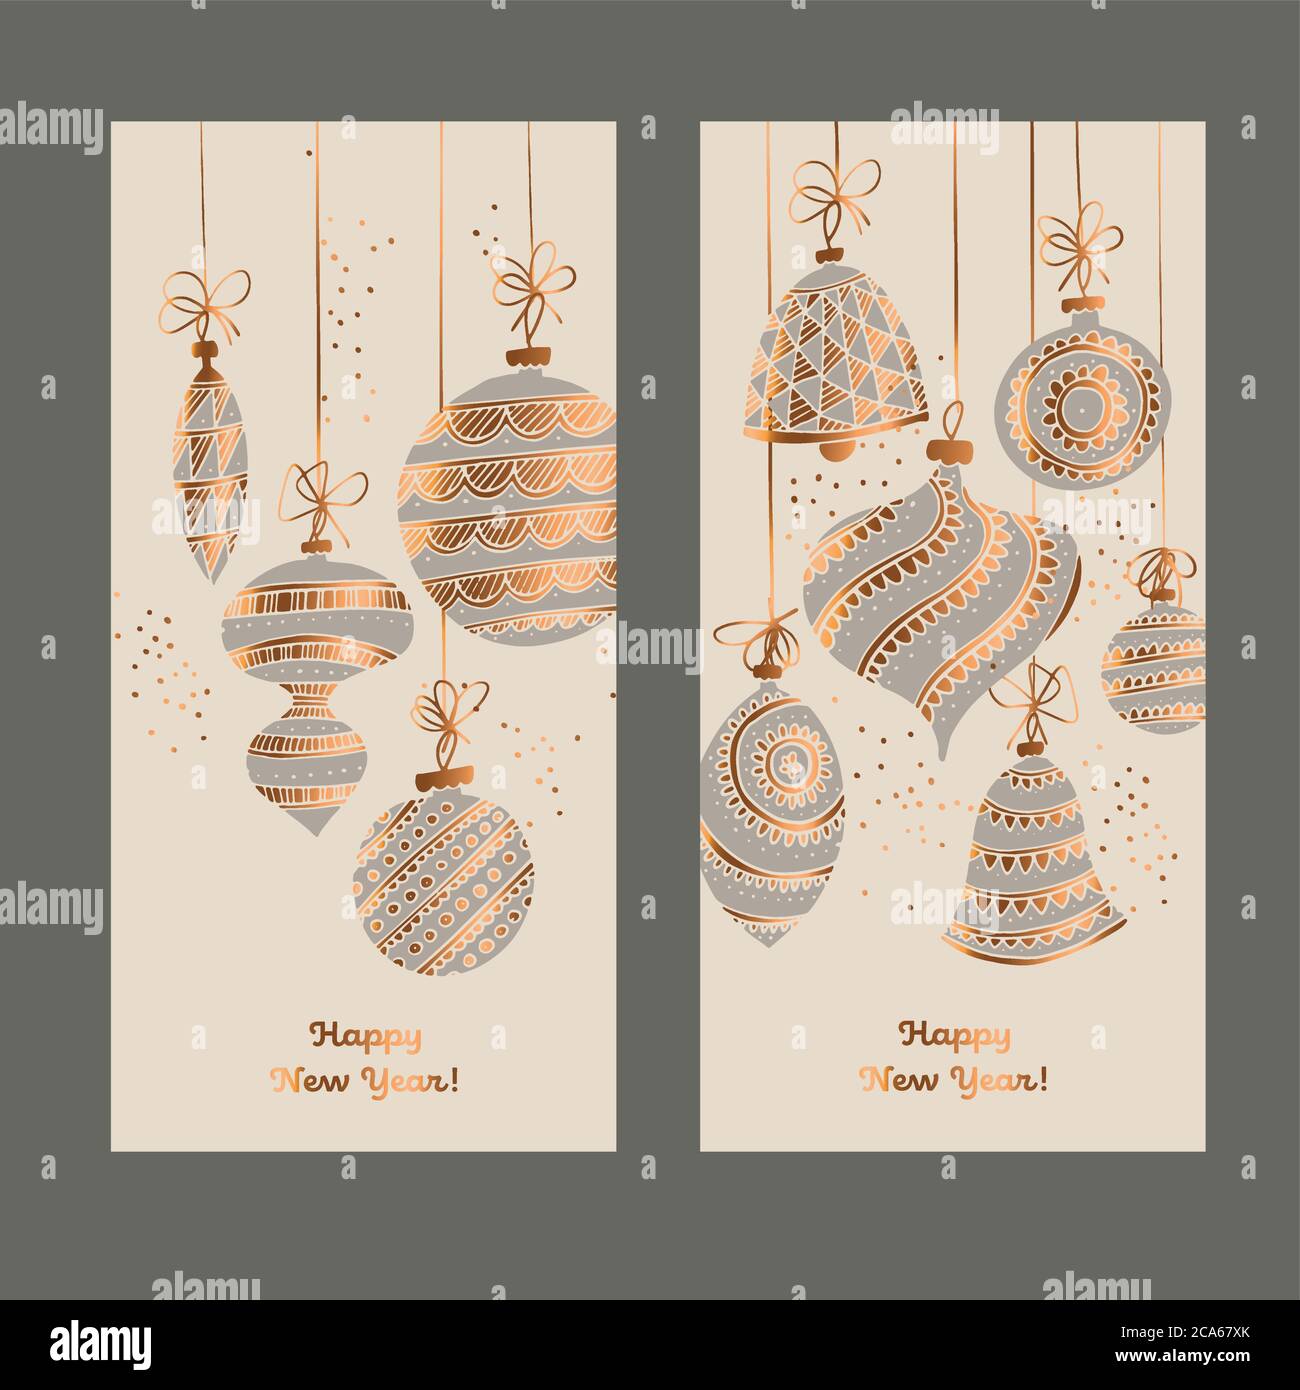 Handgezeichnete dekorative Weihnachtskugeln Komposition für Karte, Header, Einladung, Poster, Social Media, Post-Veröffentlichung. Gold und grau elegant Weihnachten V Stock Vektor